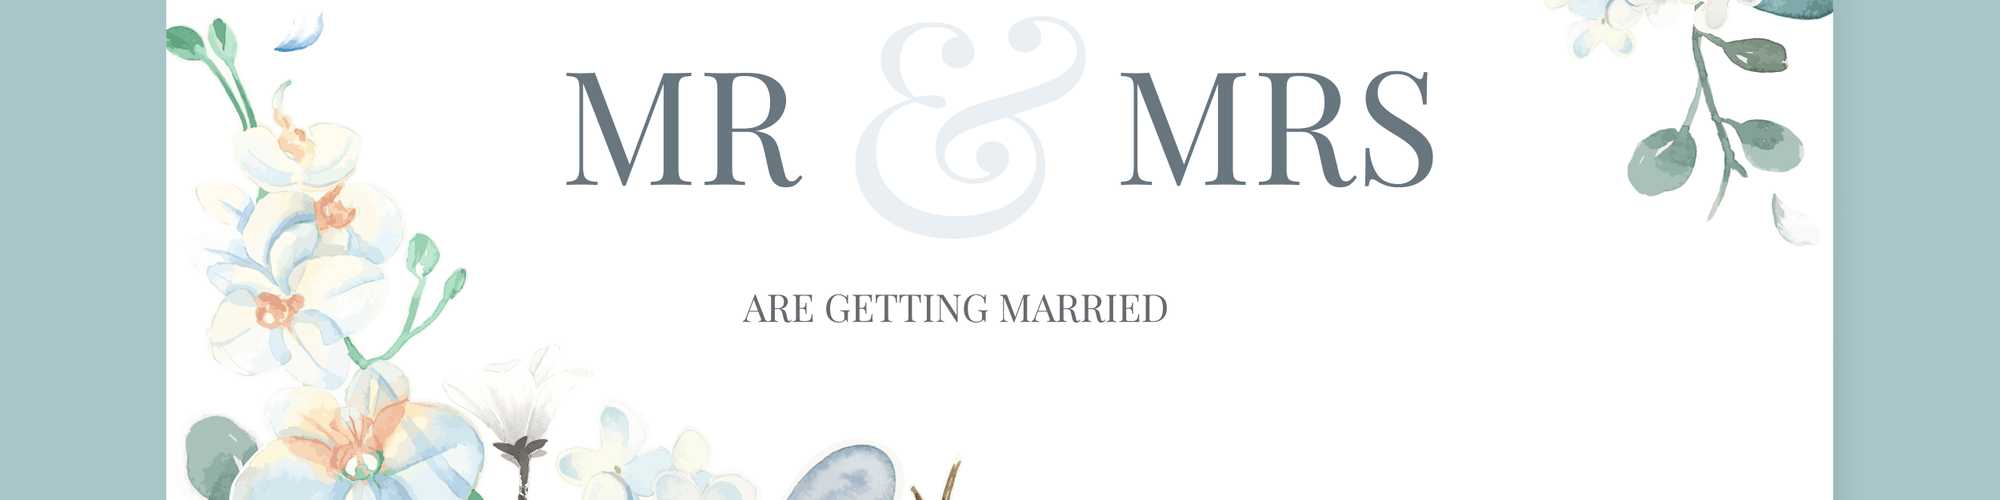 Esküvői weboldal